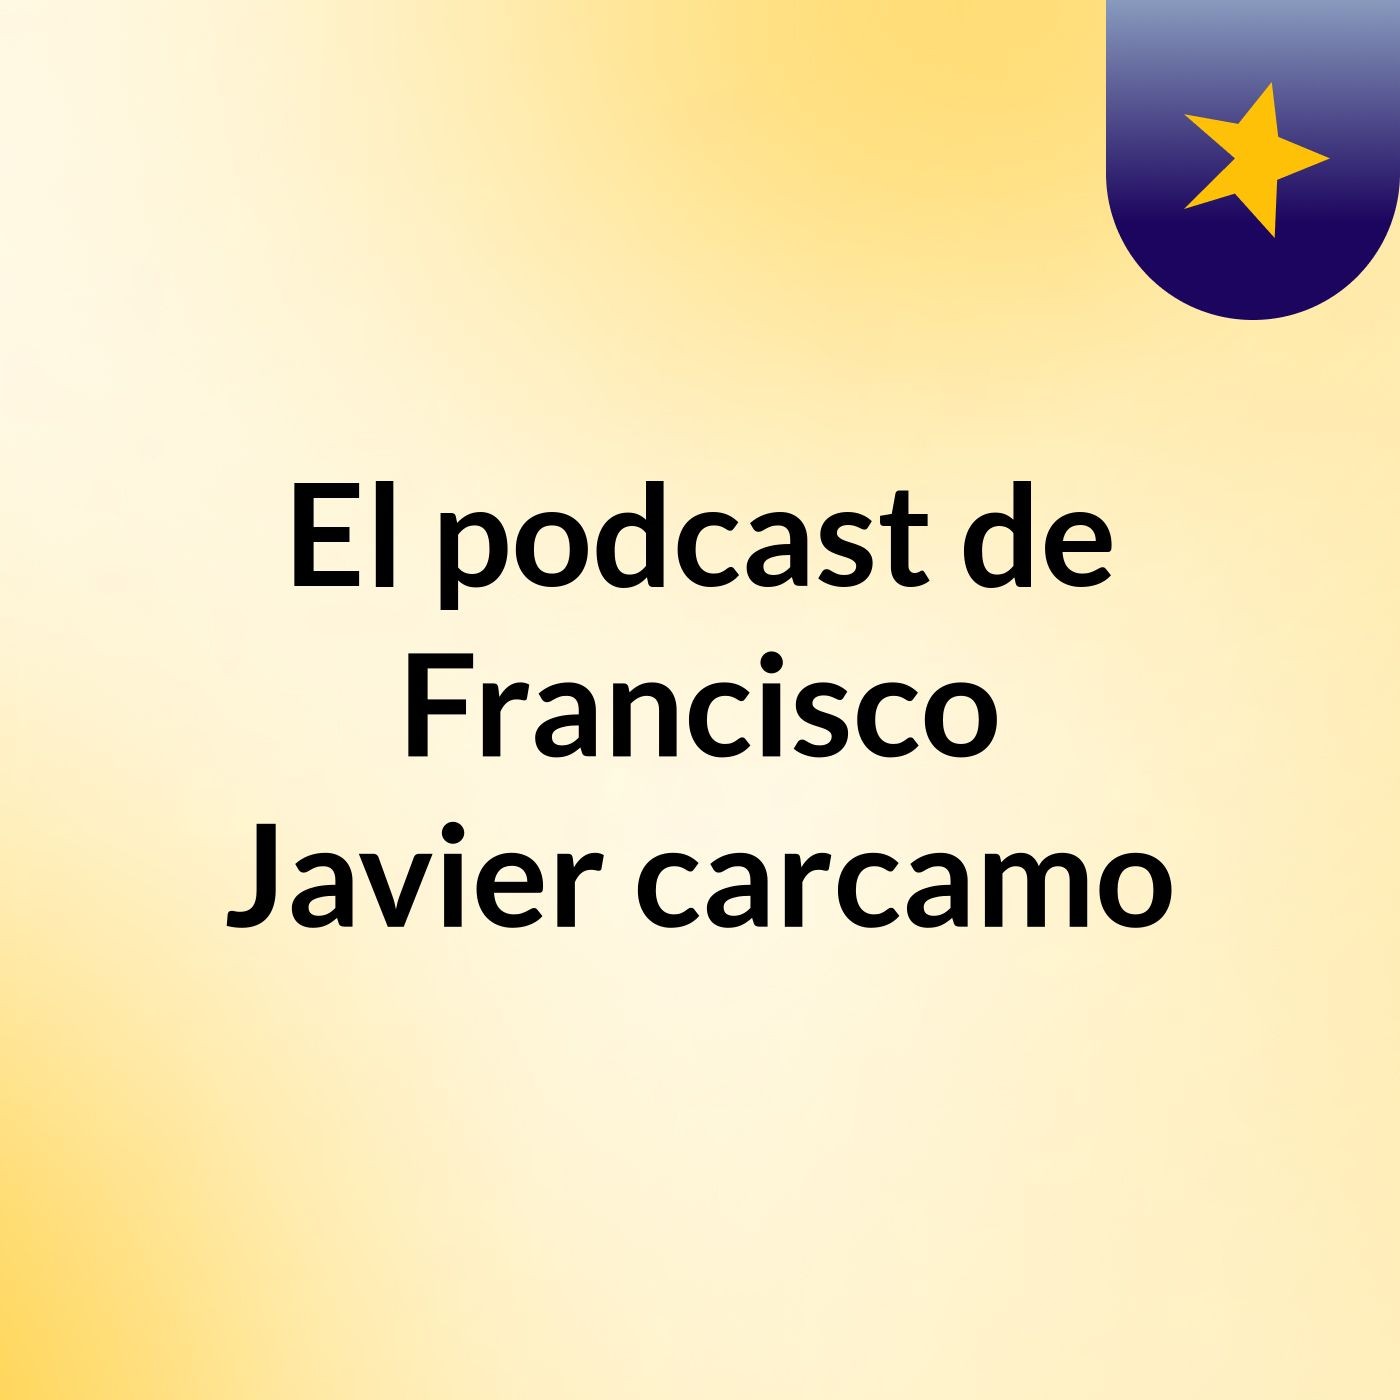 El podcast de Francisco Javier carcamo